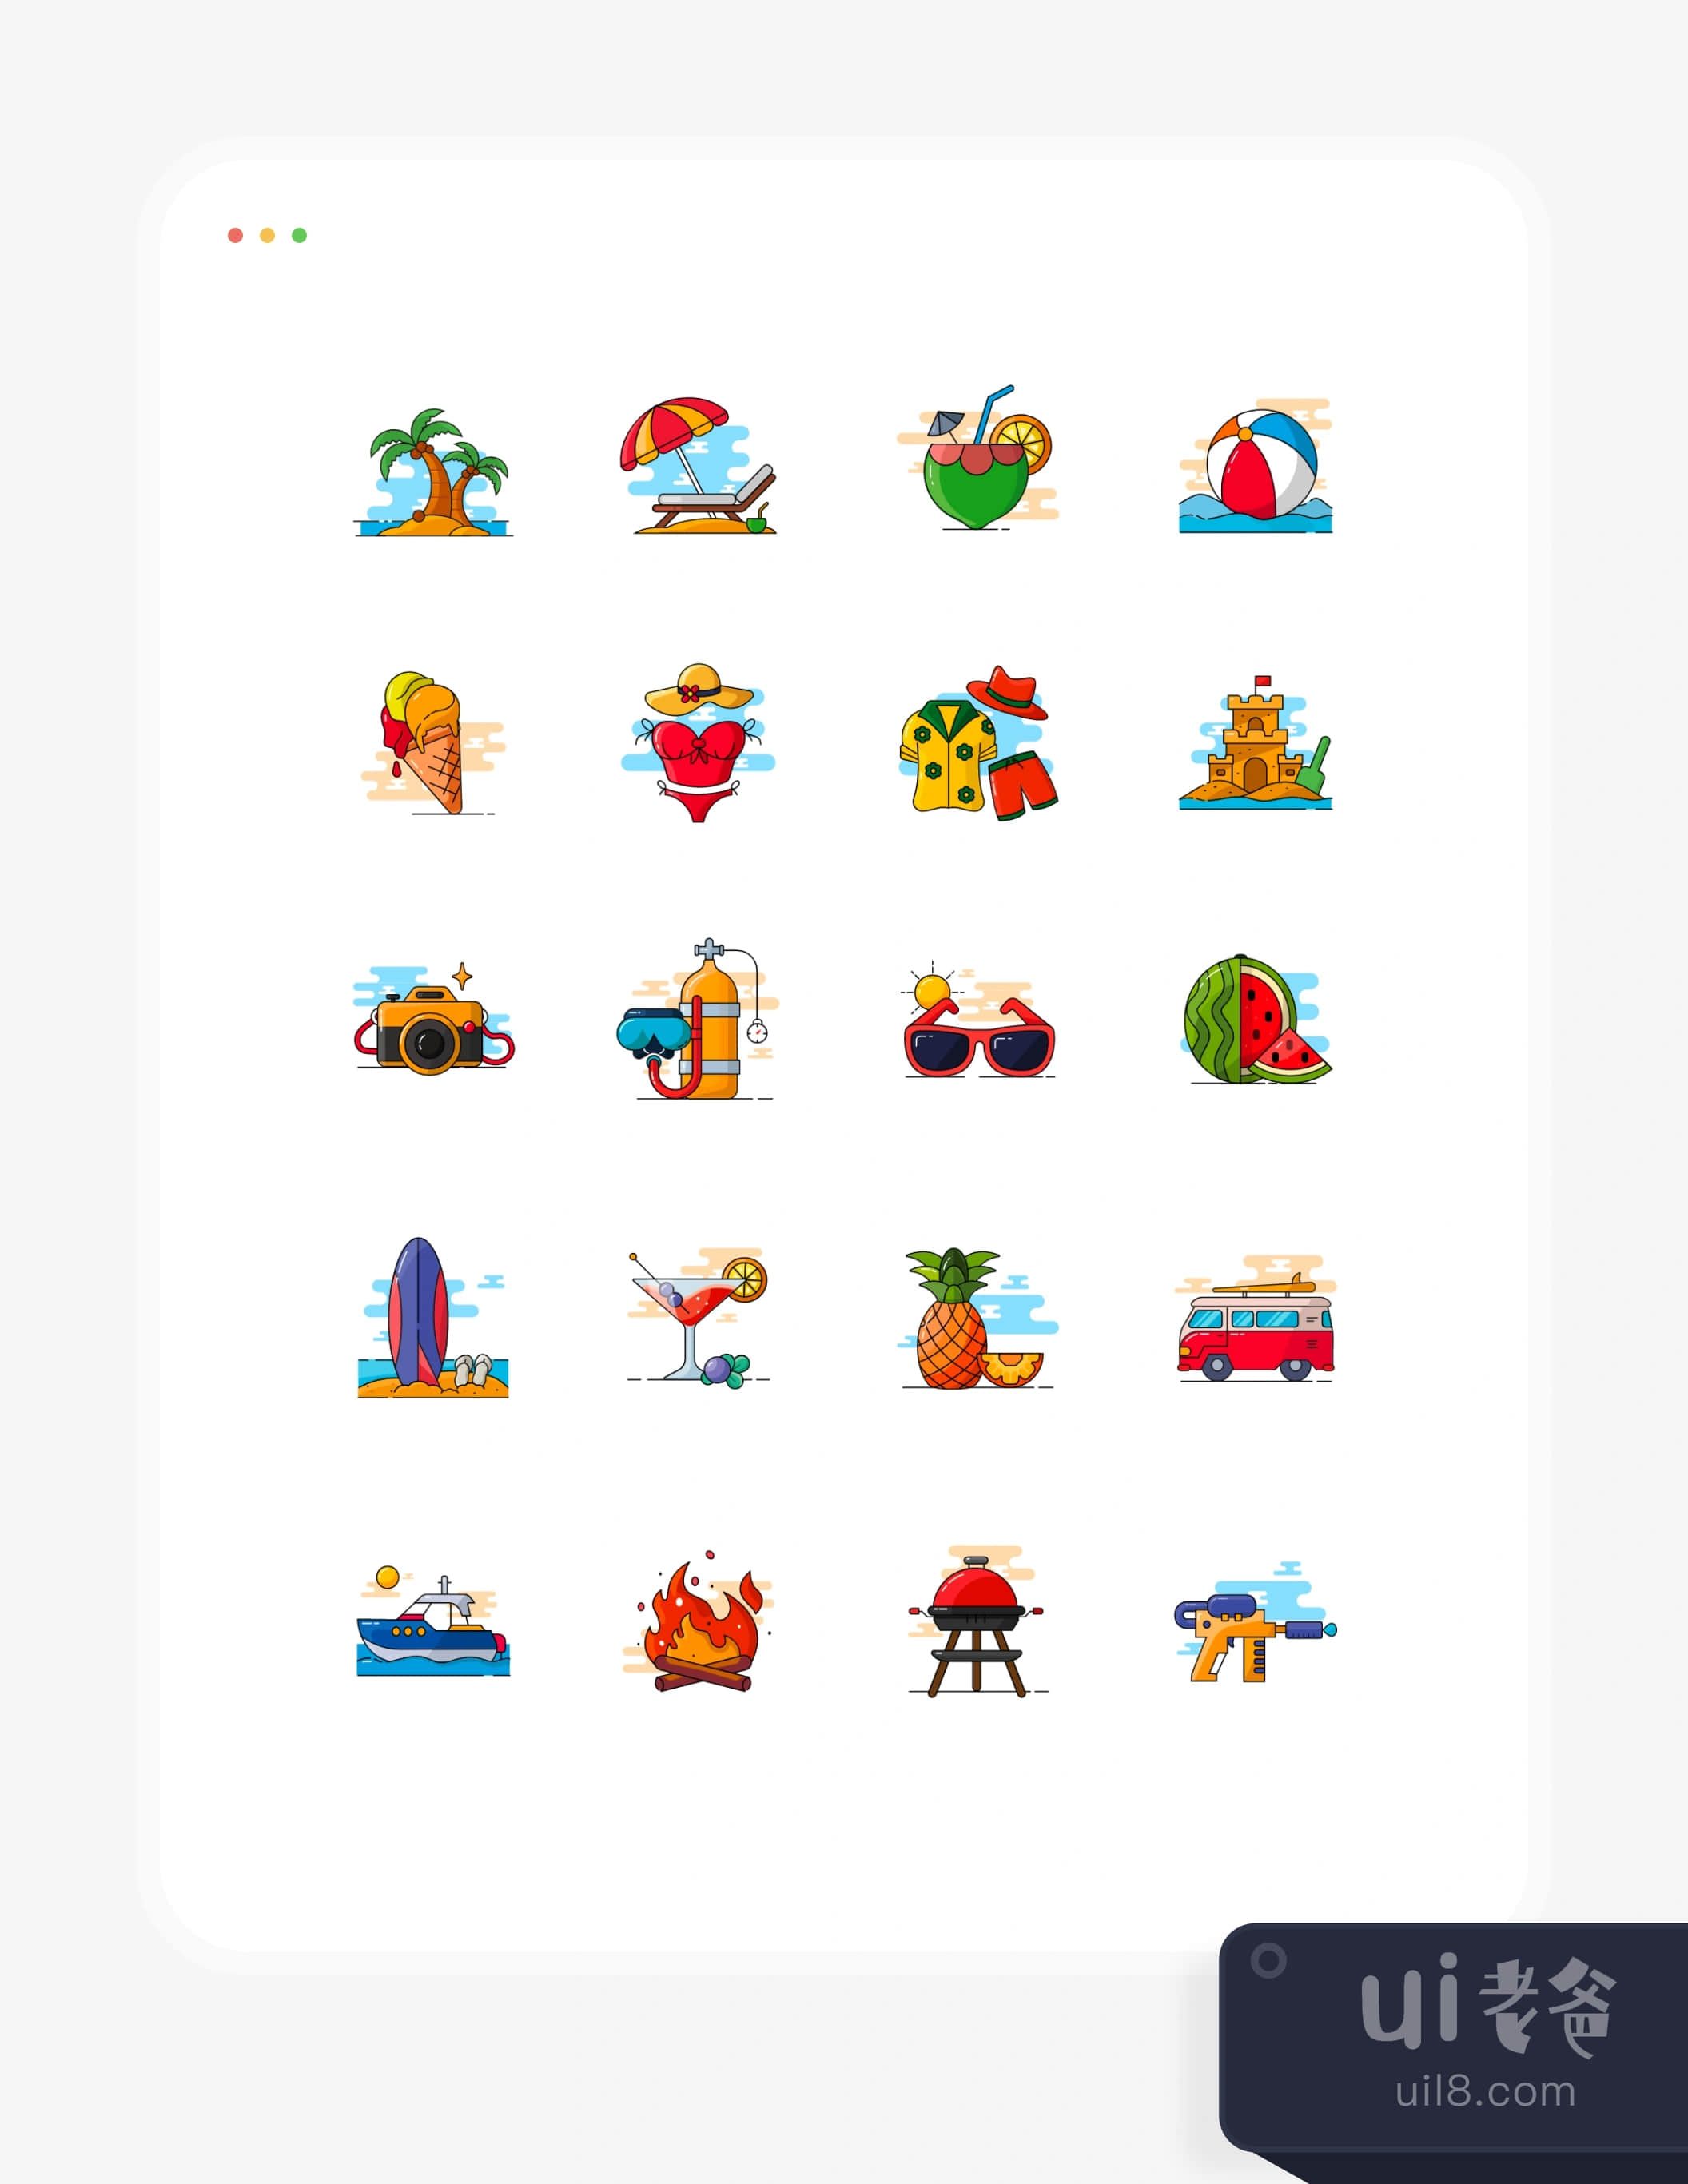 暑假 - 彩色图标集 (Summer holiday - Coloured icon set)插图